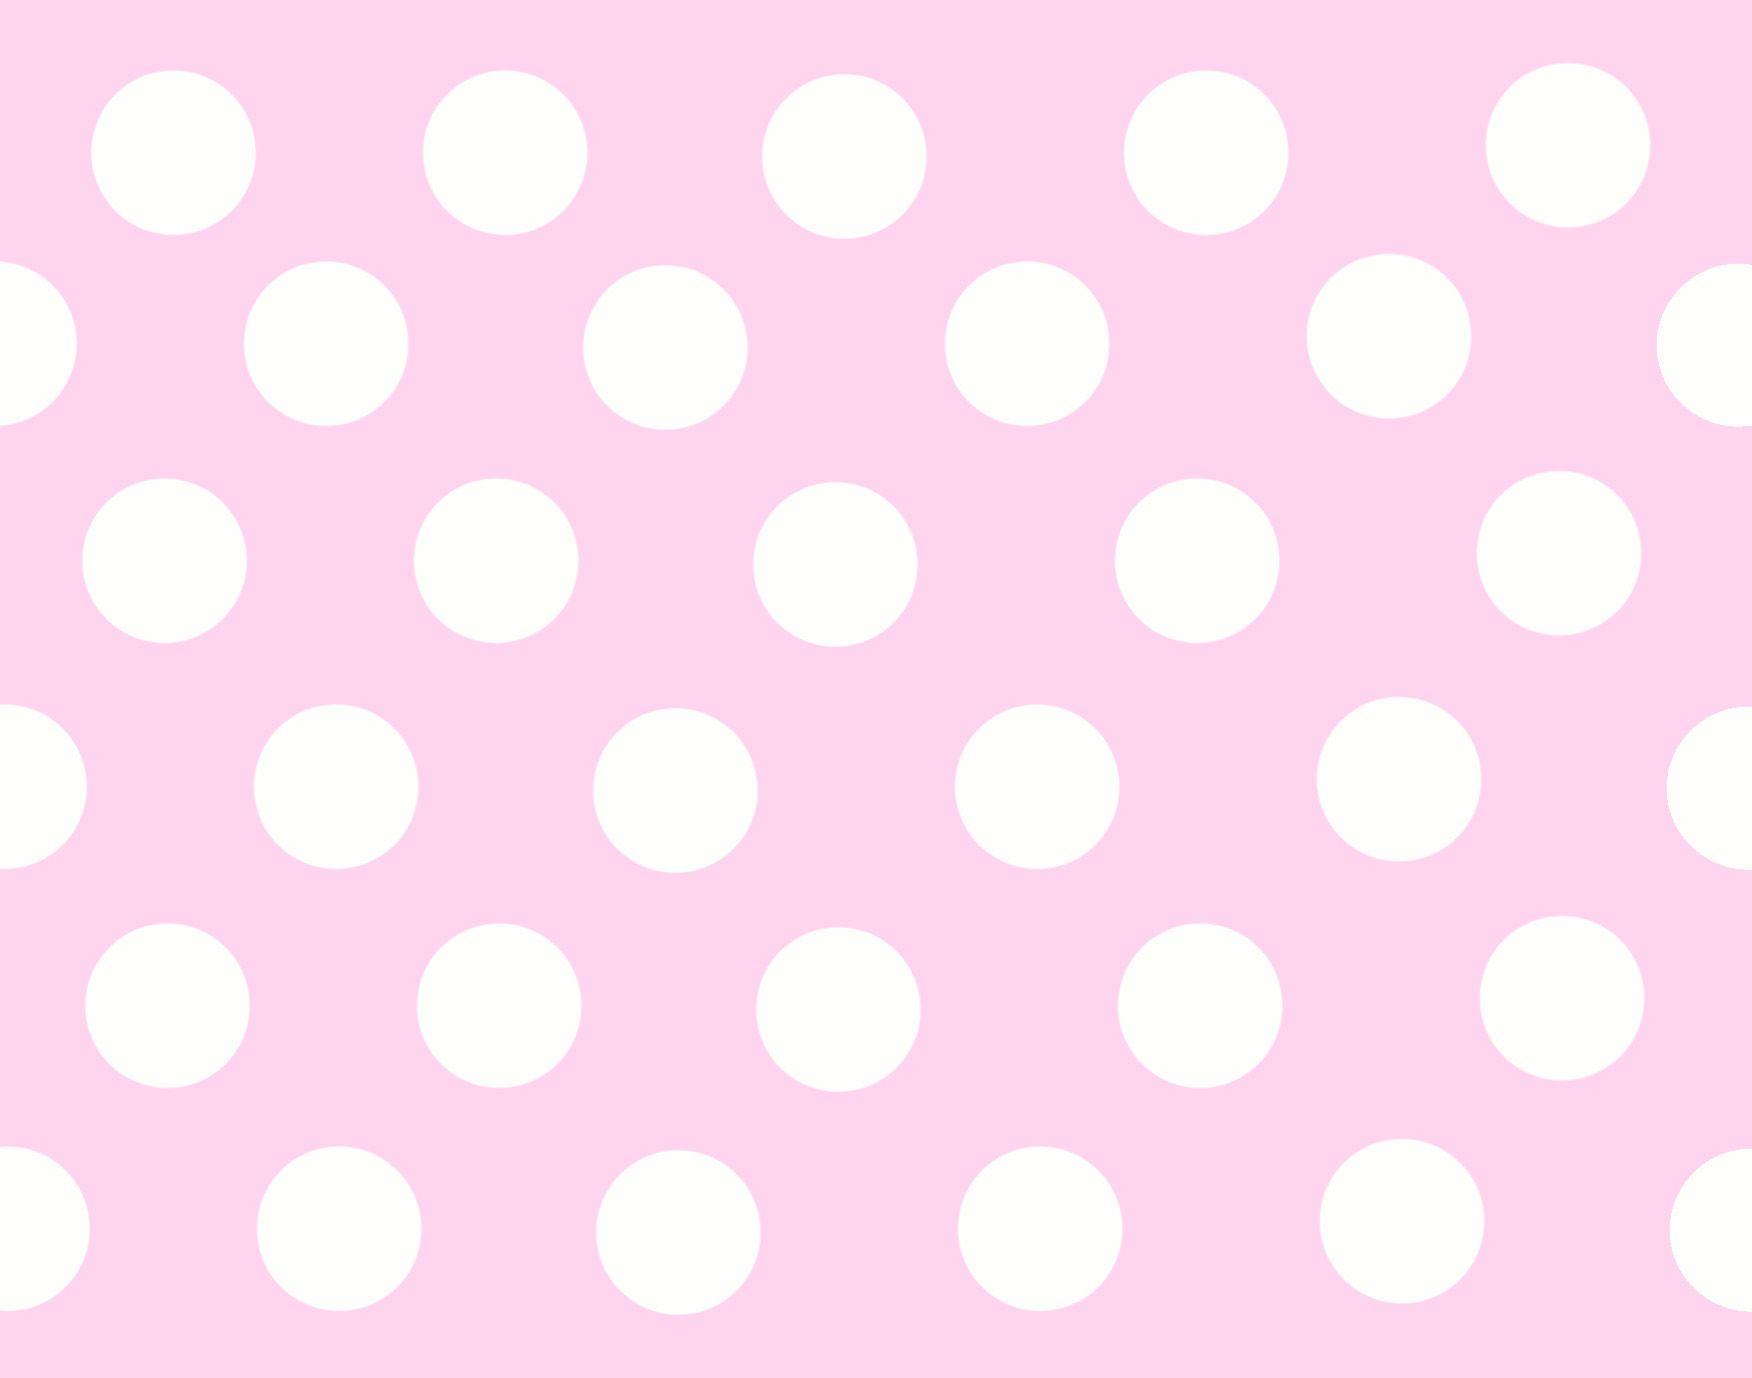 Pink Polka Dot Wallpapers - Top Những Hình Ảnh Đẹp